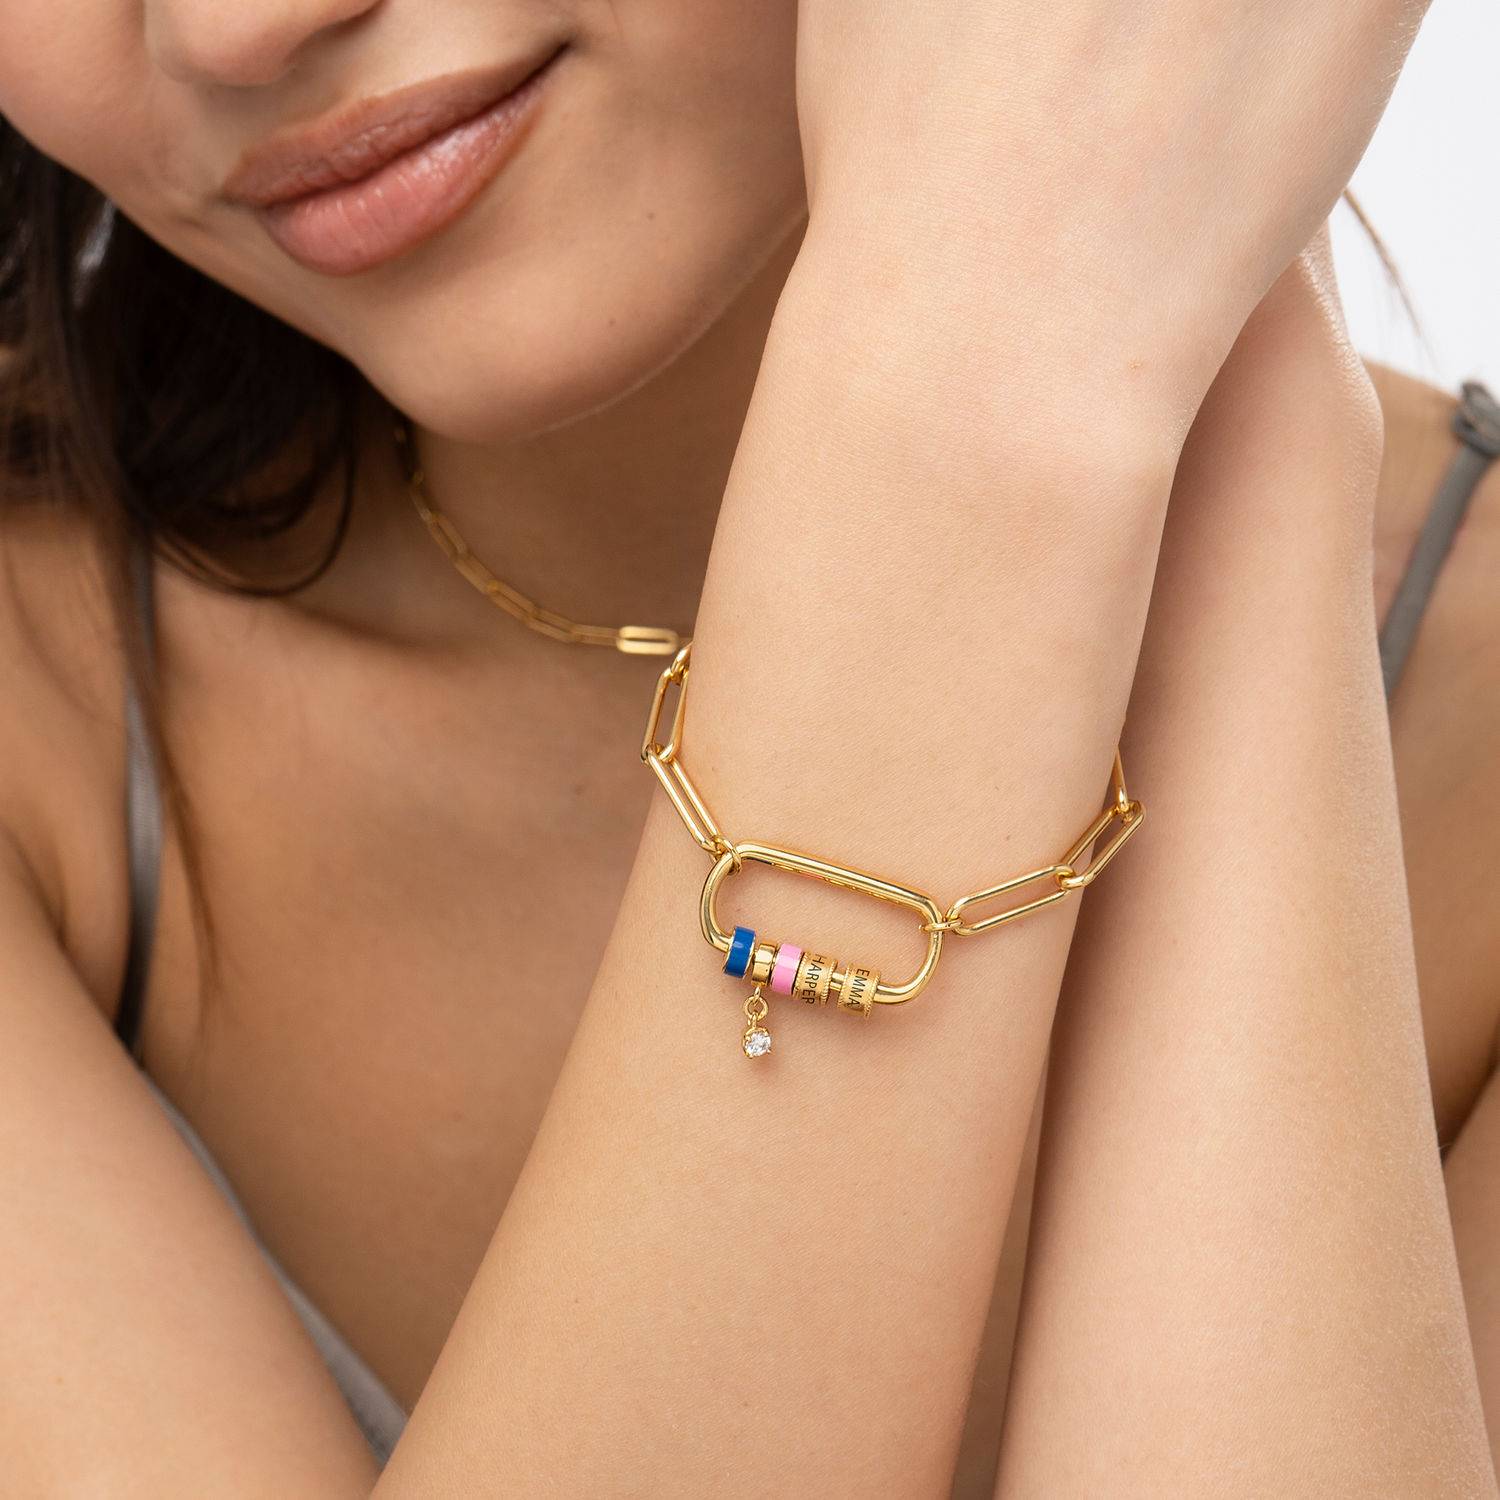 Linda armband met ovale sluiting en 0,25 ct diamant in 18k goud vermeil-3 Productfoto